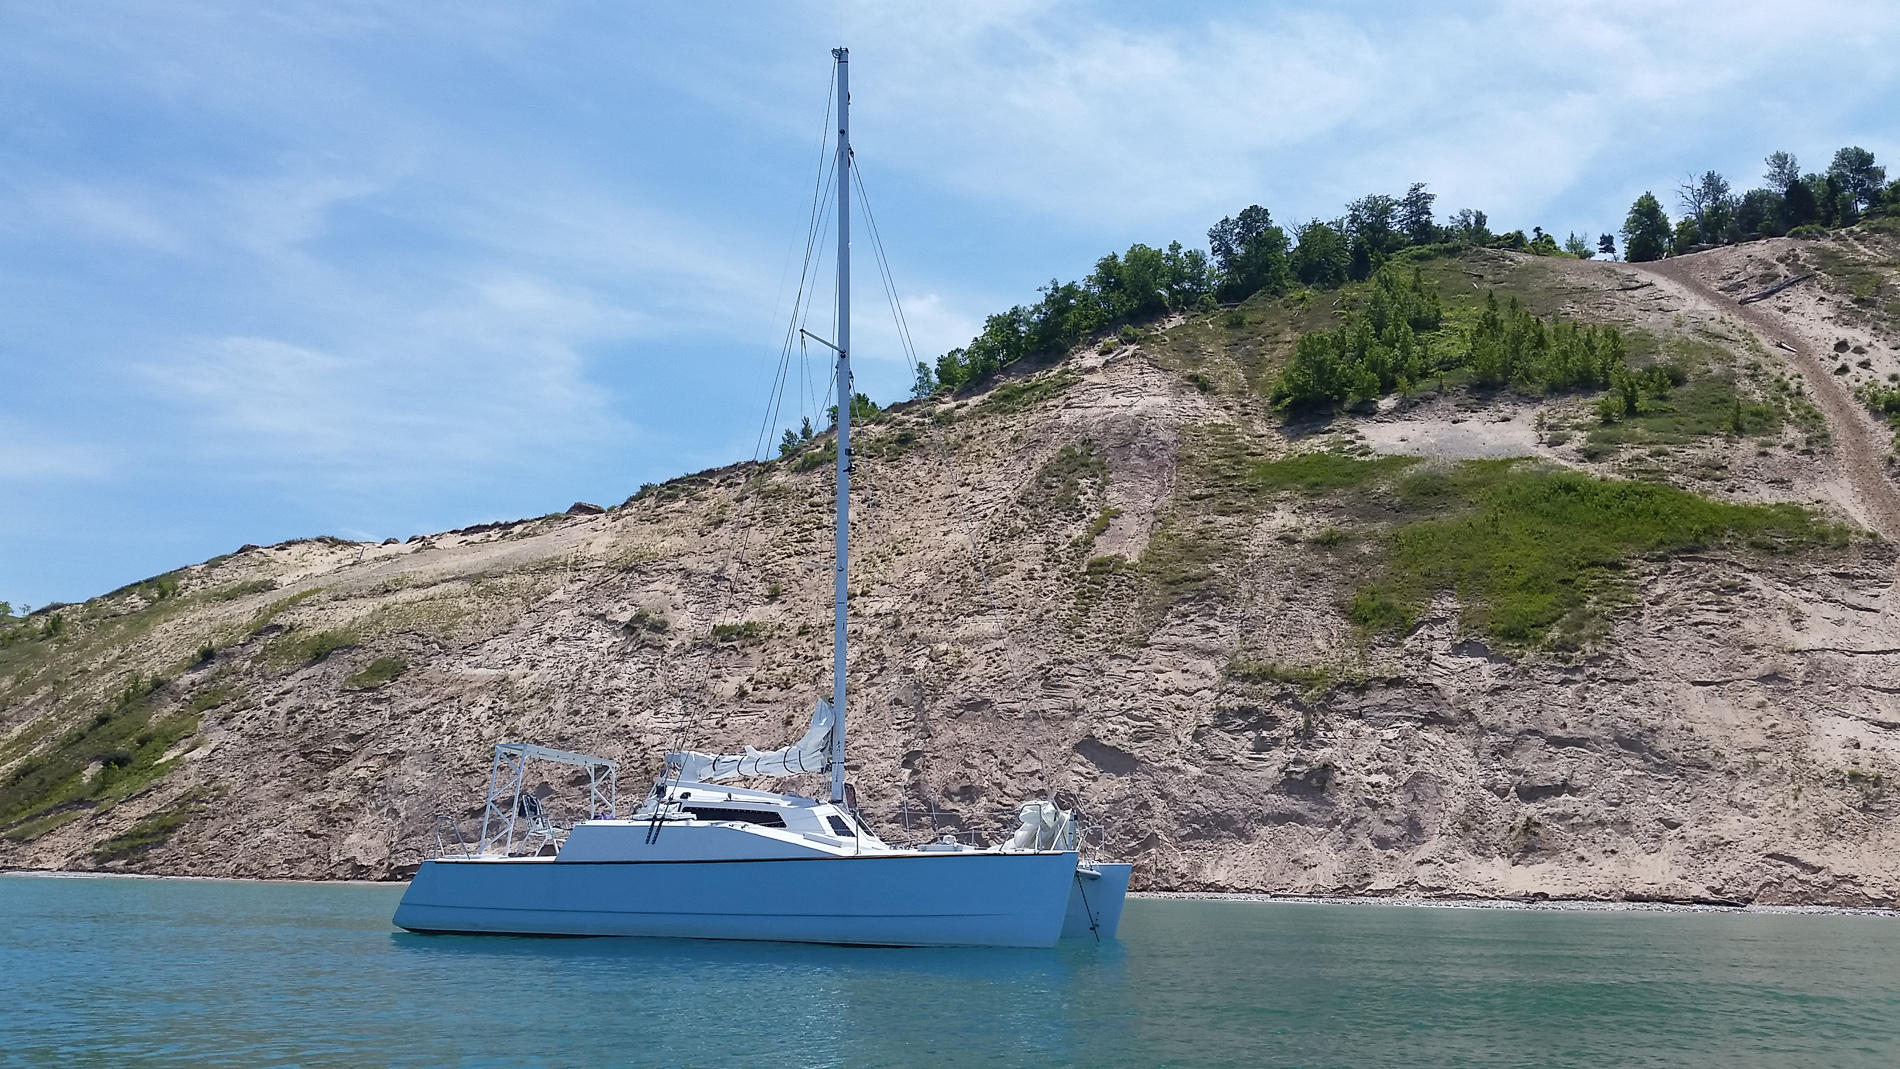 From motor boat to sail boat through Lake Michigan and Lake Superior